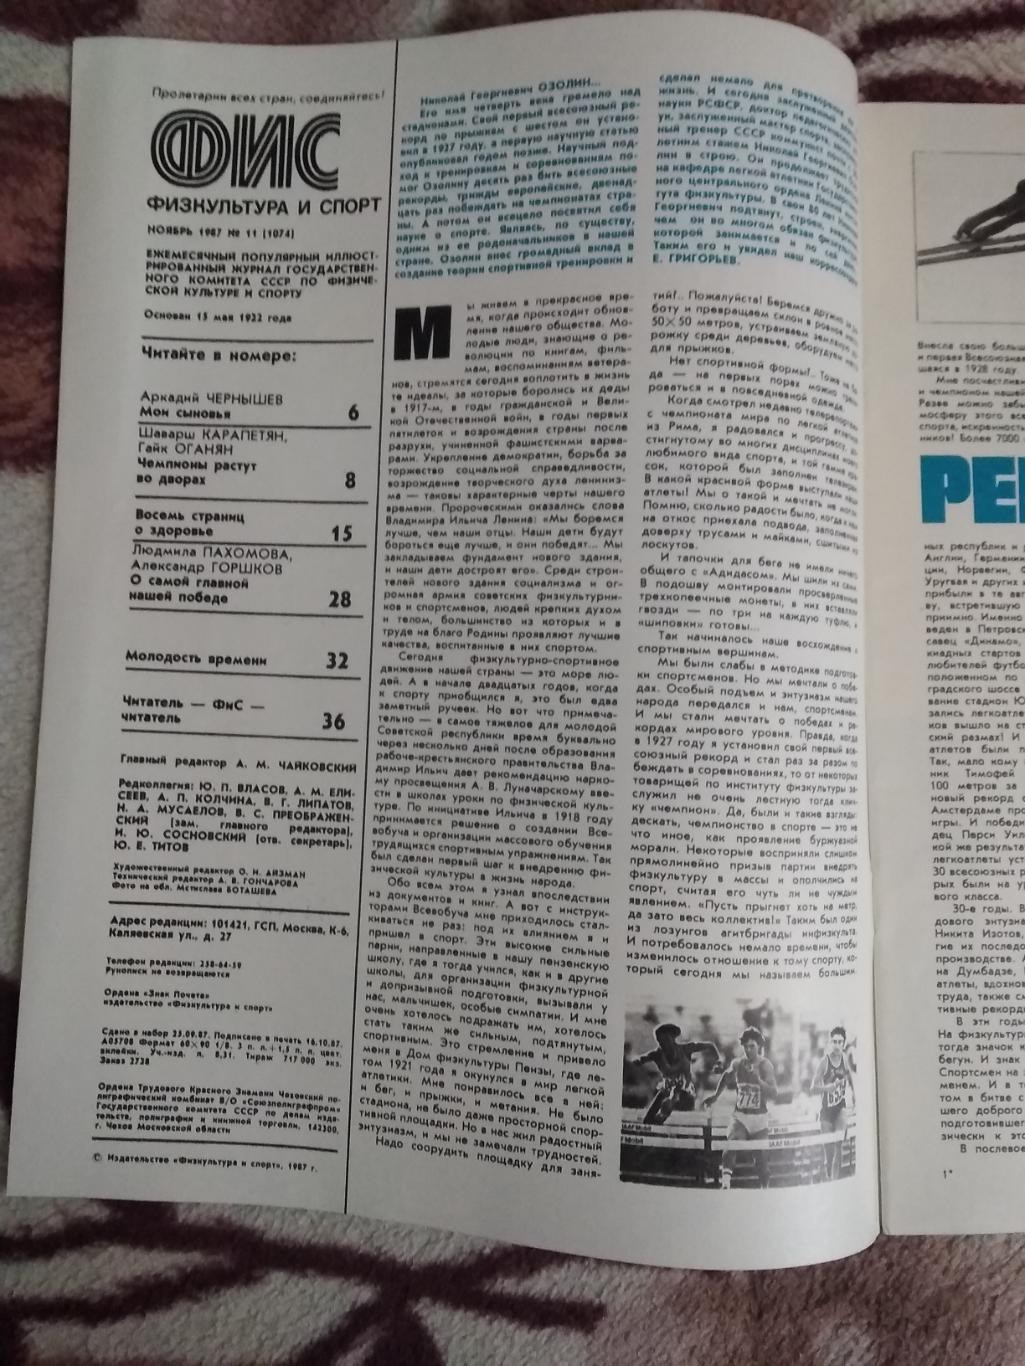 Журнал.Физкультура и спорт № 11 1987 г. (ФиС). 1